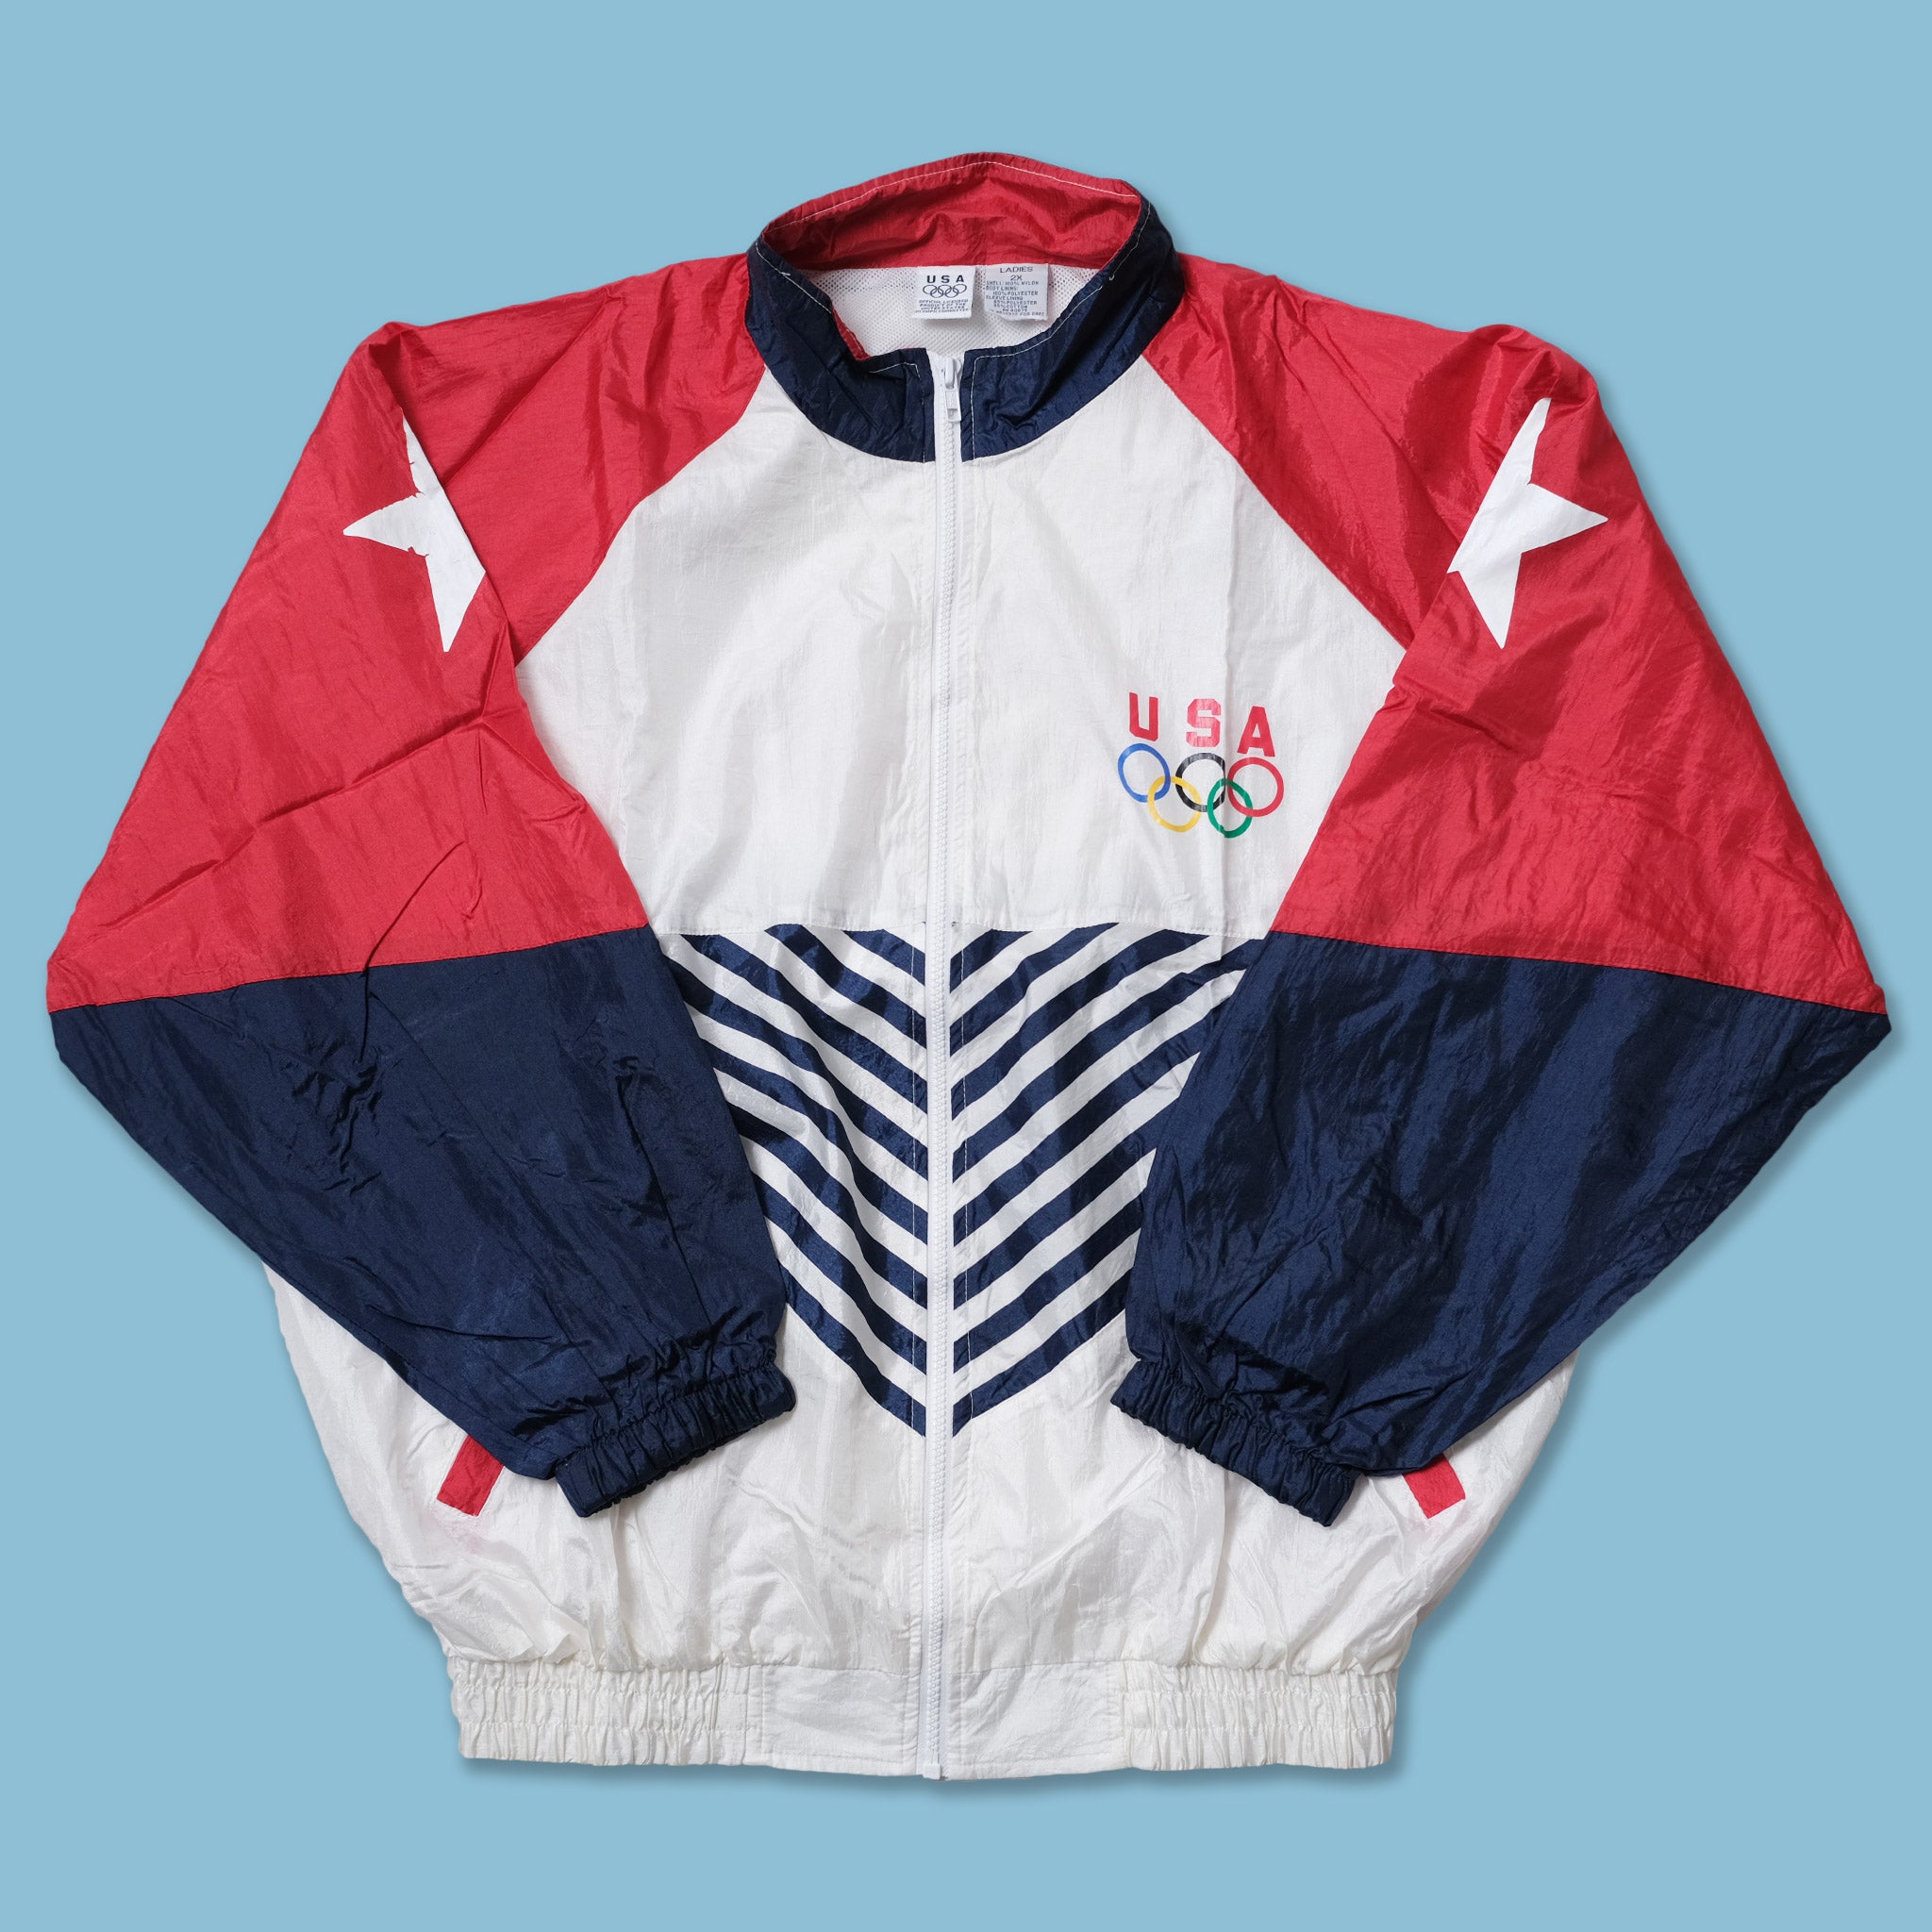 Vintage 1996 Champion Atlanta Olympics Team USA Windbreaker Jacket, Vintage Olympic Jacket